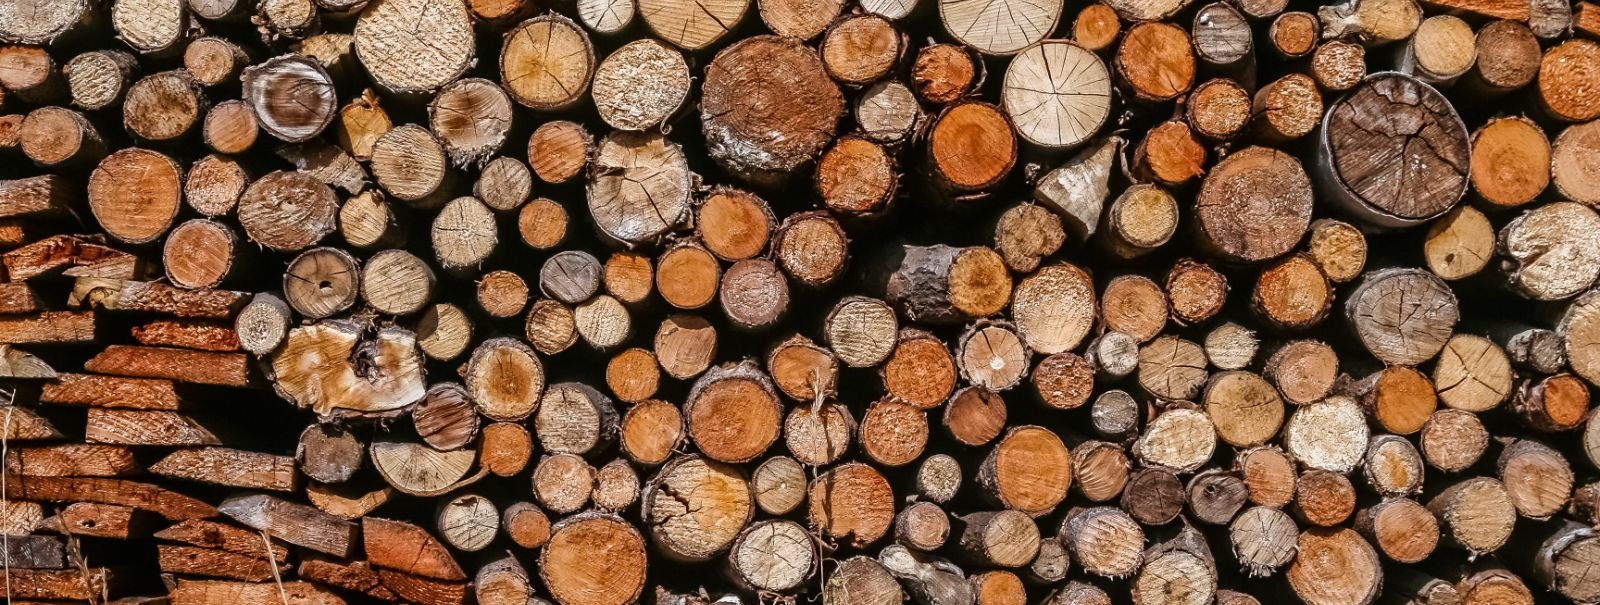 Õige puidu valimine on kriitilise tähtsusega ehitus- ja renoveerimisprojektides. Valitud puidu kvaliteet võib oluliselt mõjutada teie projekti struktuurset terv